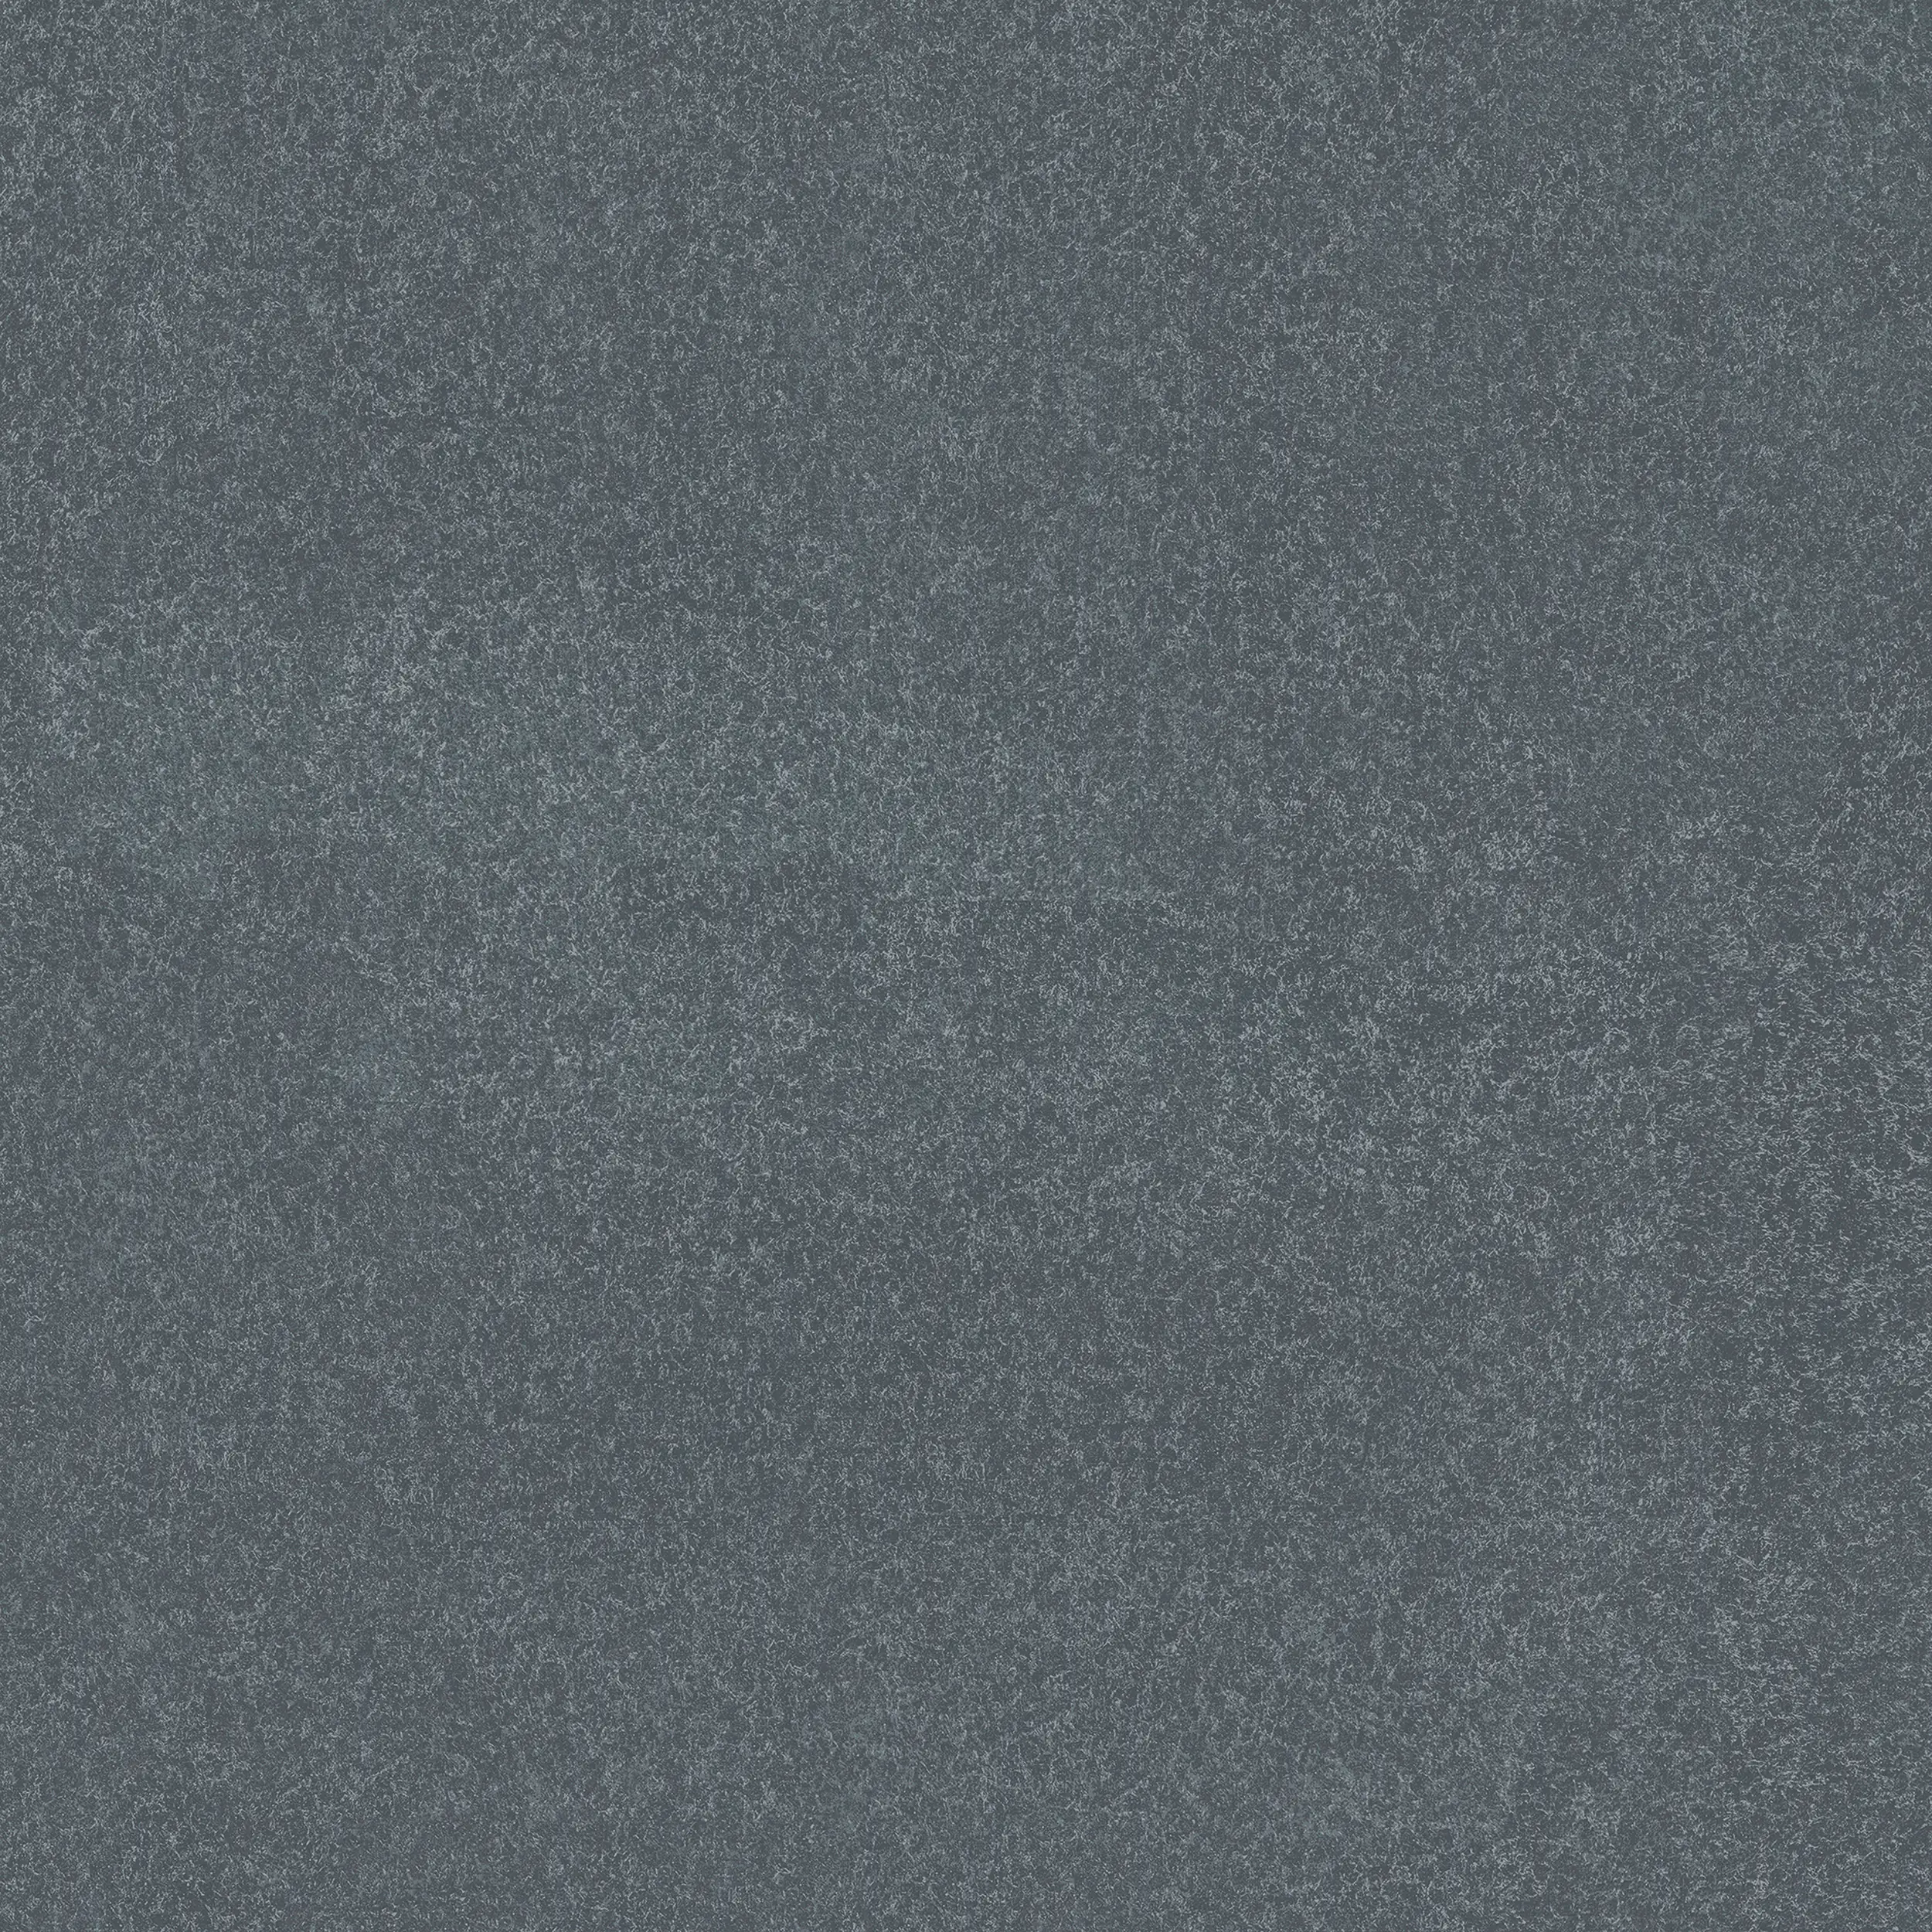 Terrassenplatte Feinsteinzeug Basalt Stone 60 grau | kaufen x cm Baumarkt Globus 3 60 x